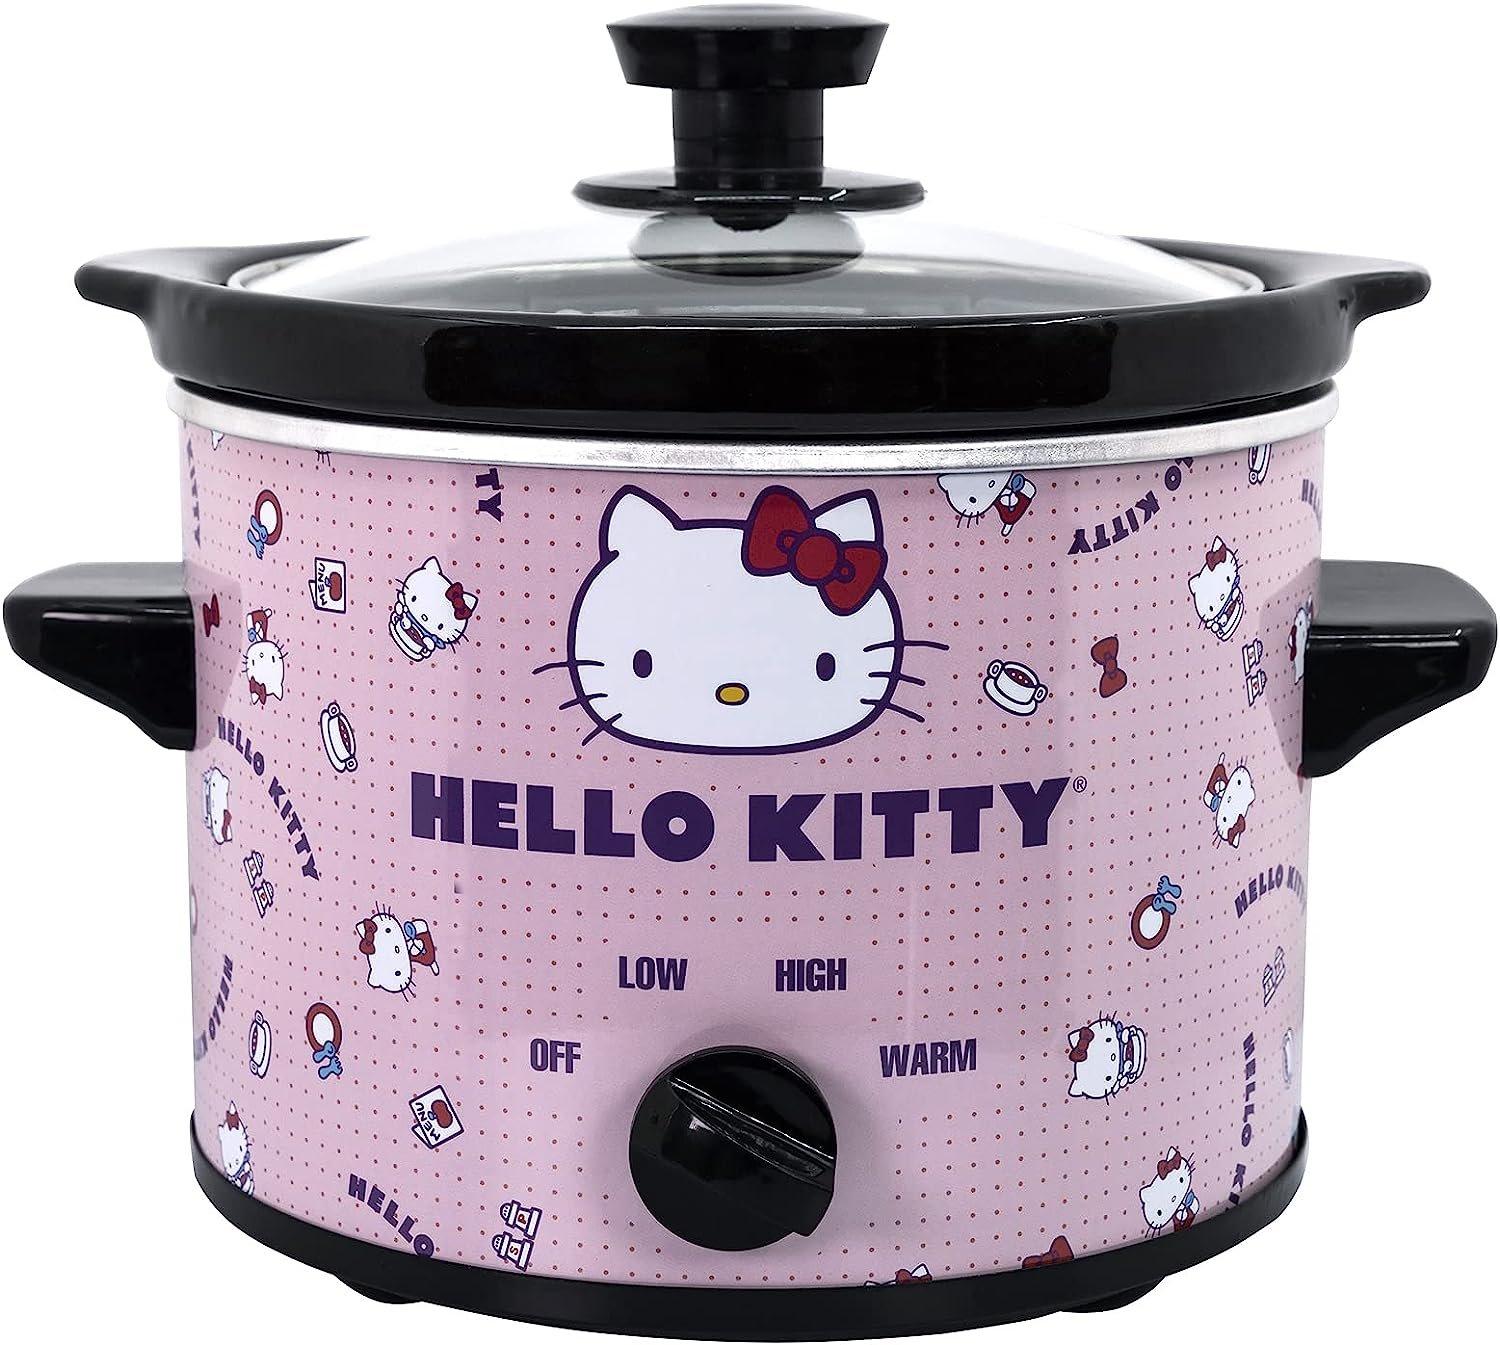 https://media.gamestop.com/i/gamestop/20005568/Hello-Kitty-2-Qt-Slow-Cooker?$pdp$